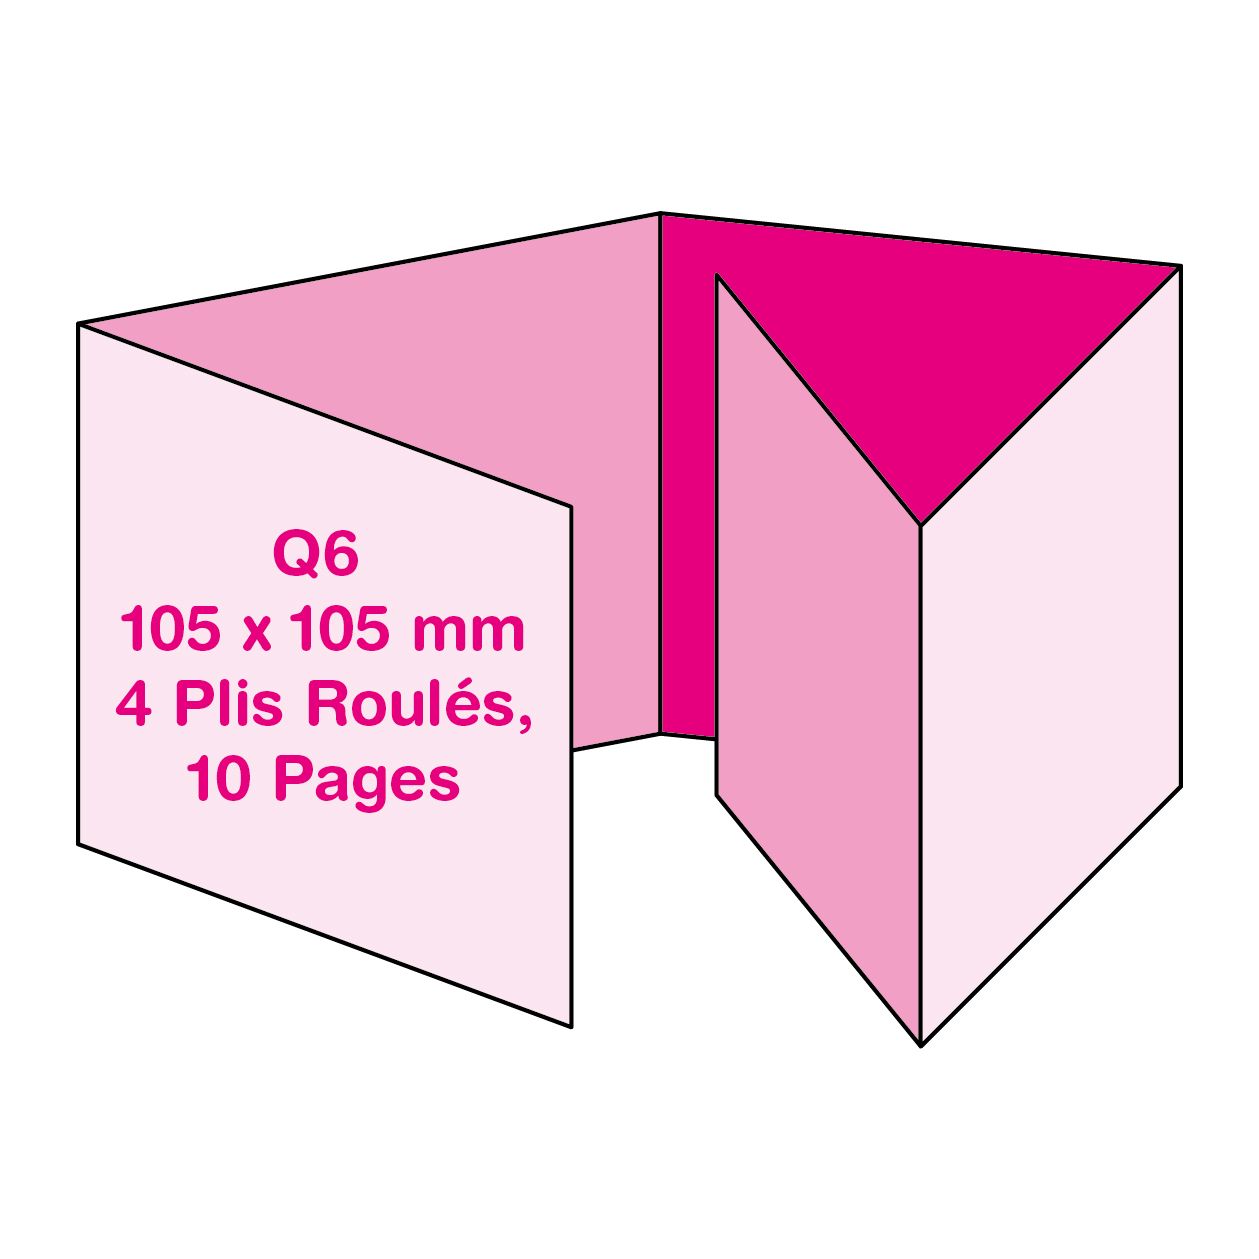 Format Q6 (10.5 x 10.5 cm), 4 Plis Roulés